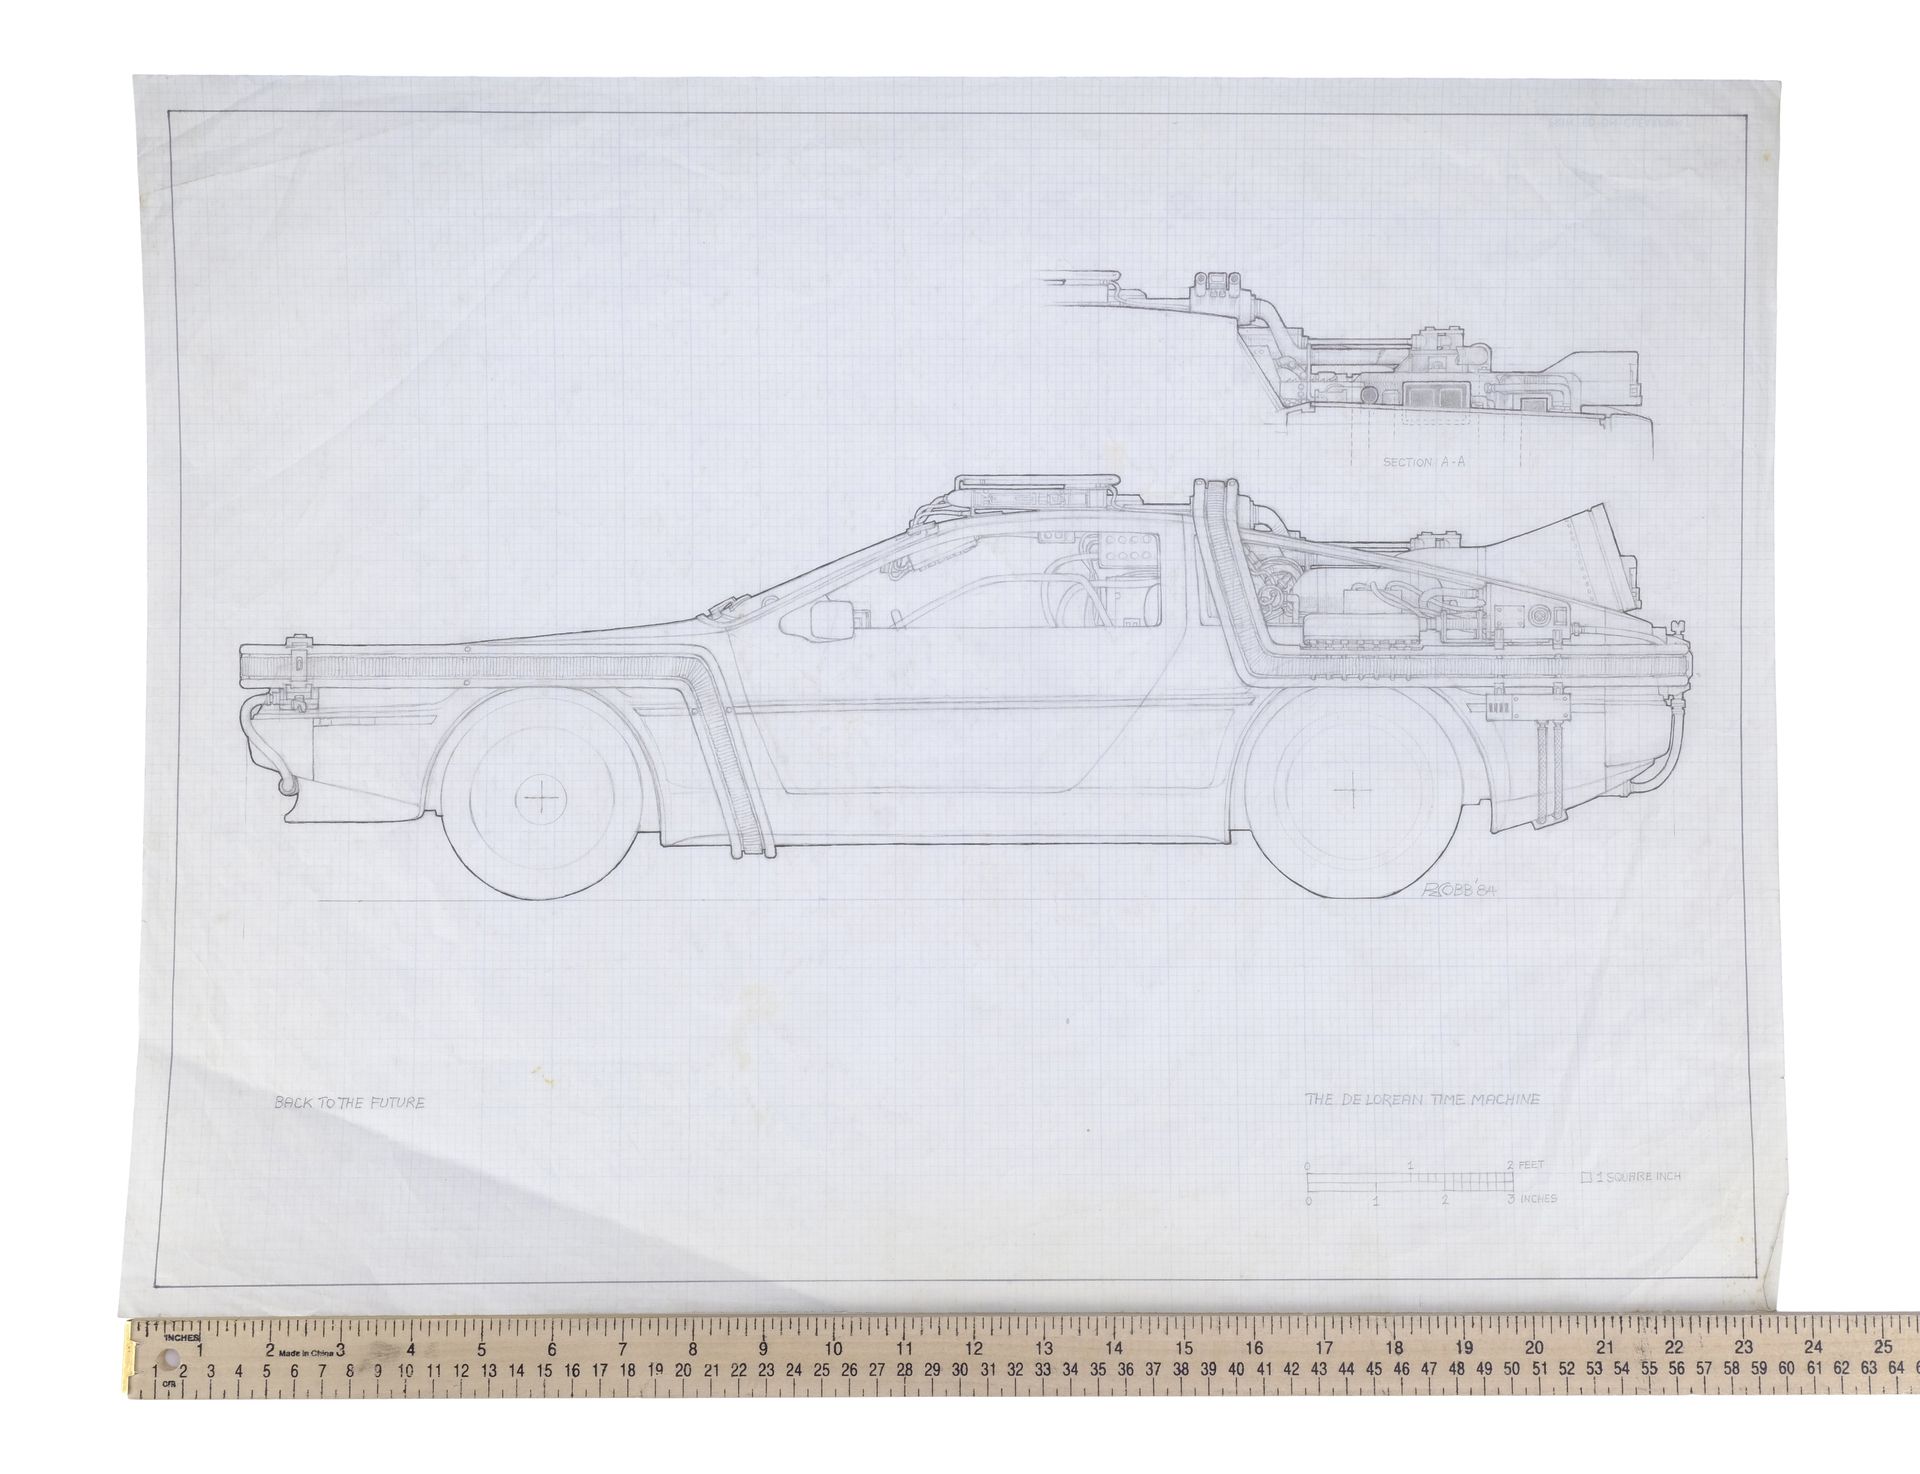 BACK TO THE FUTURE (1985) - Hand-Drawn Ron Cobb Interior DeLorean Time Machine Concept Art - Image 2 of 2